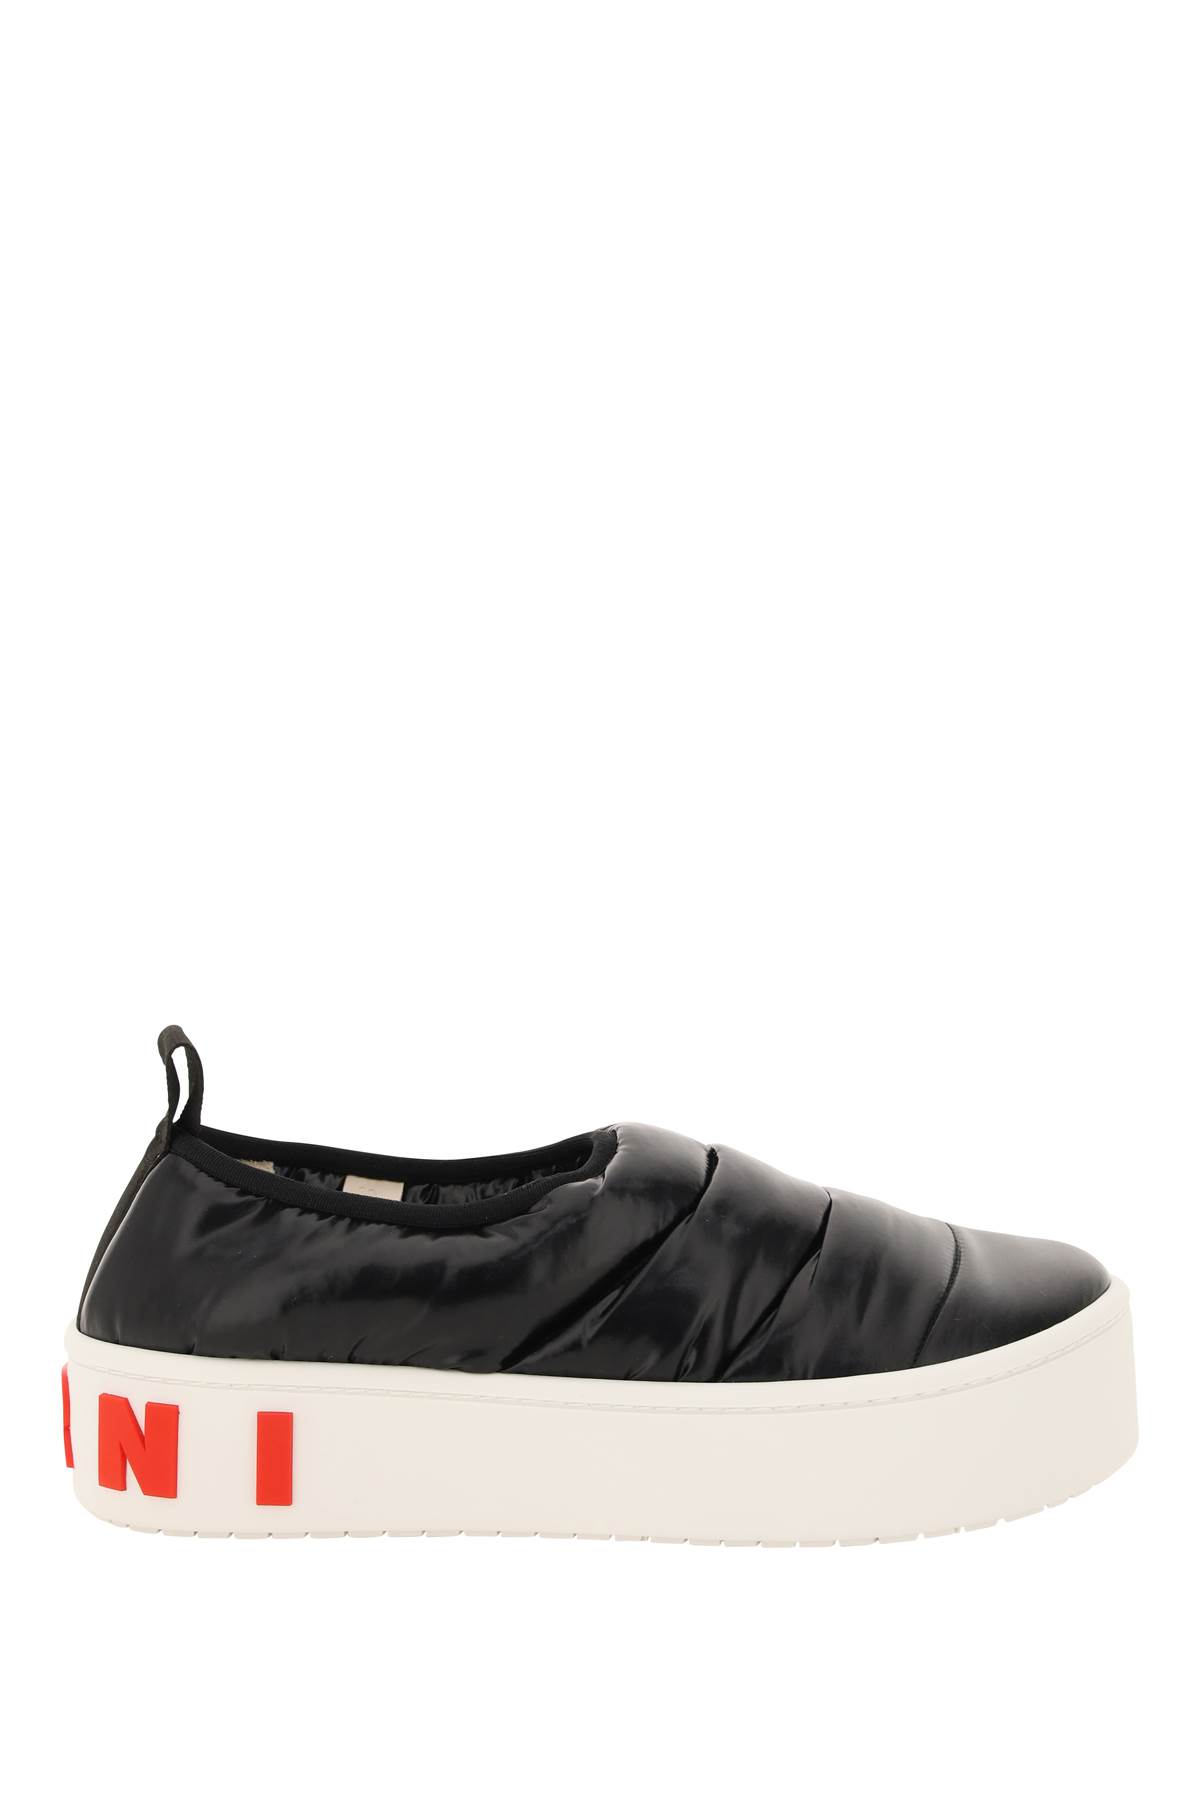 Marni Padded Nylon Slip-on Sneakers